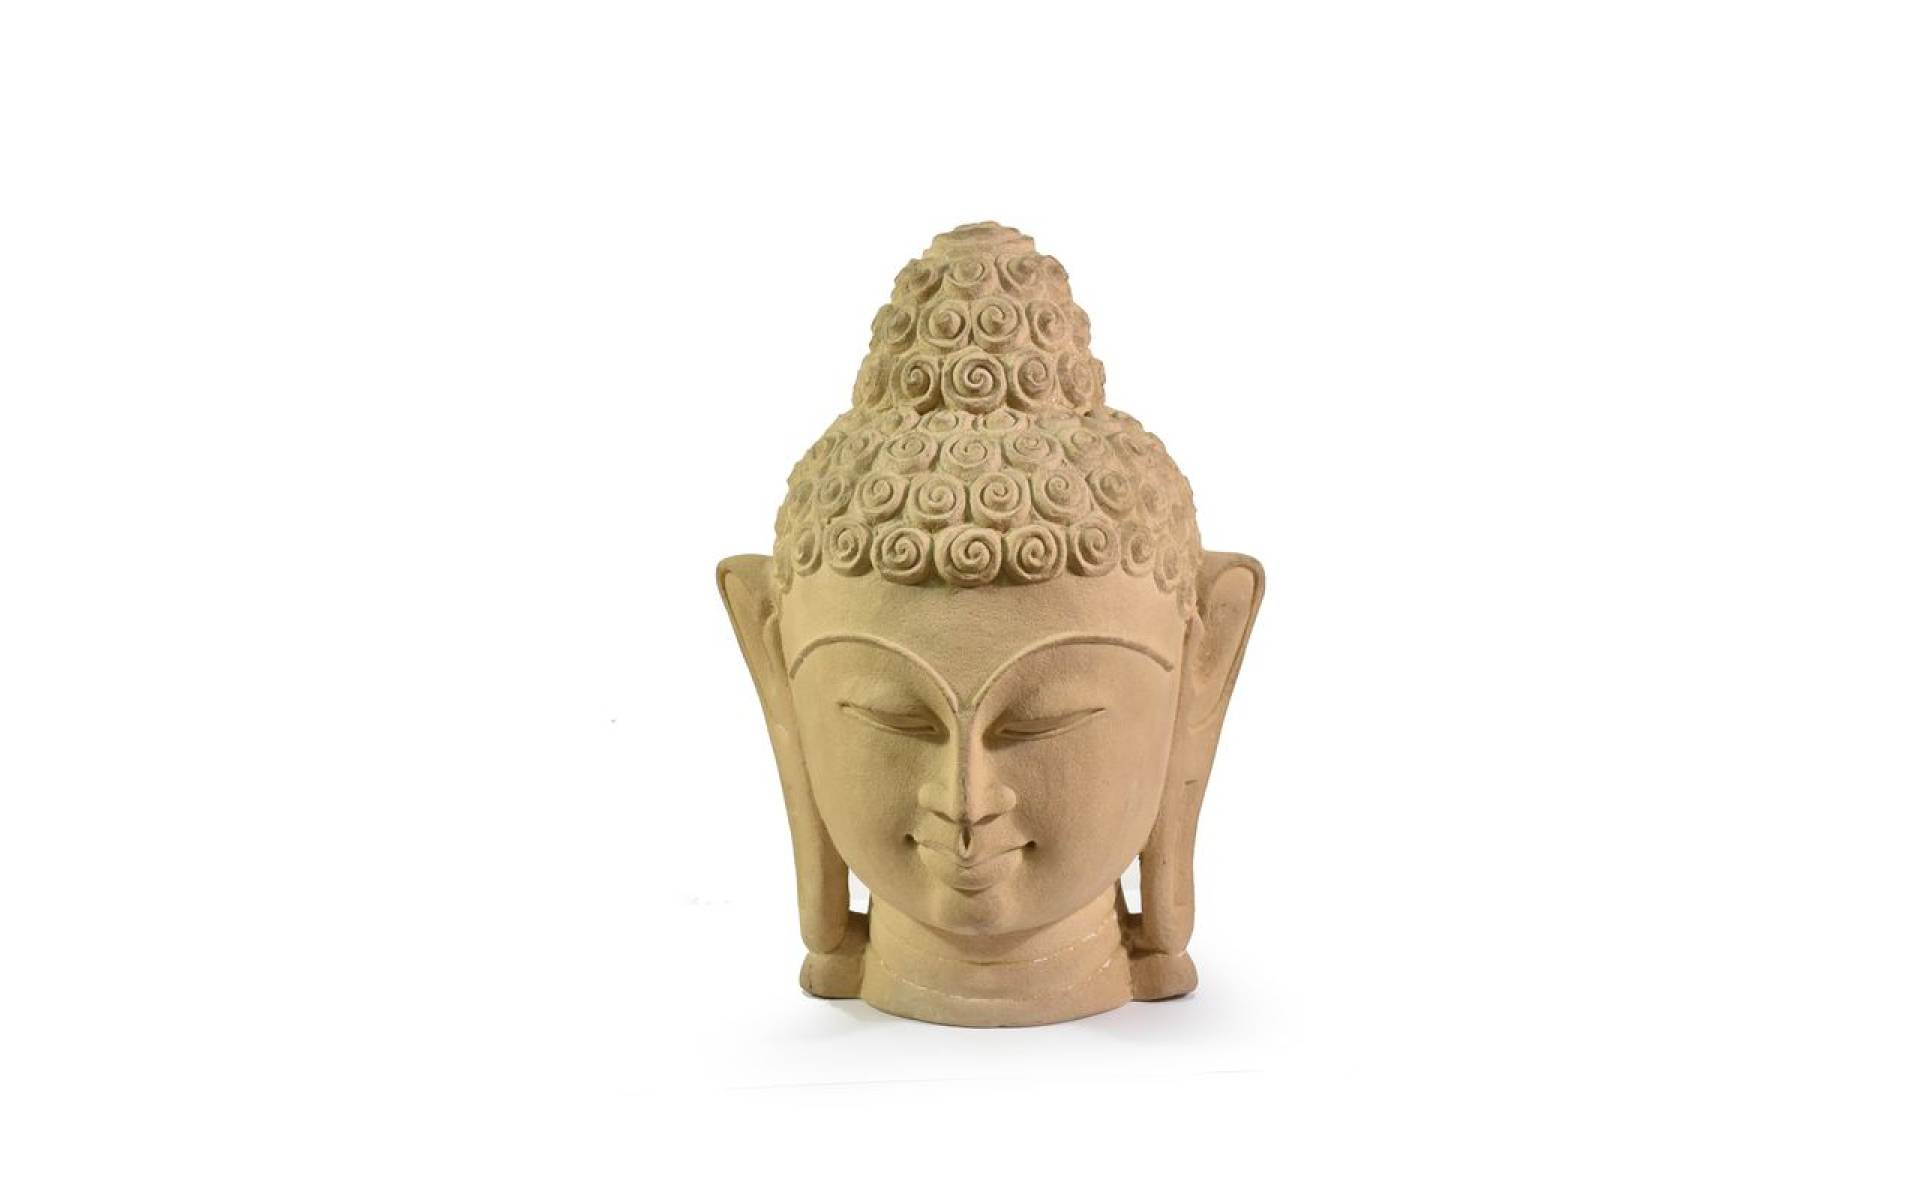 Kamenná soška, Budha head, 25-27cm